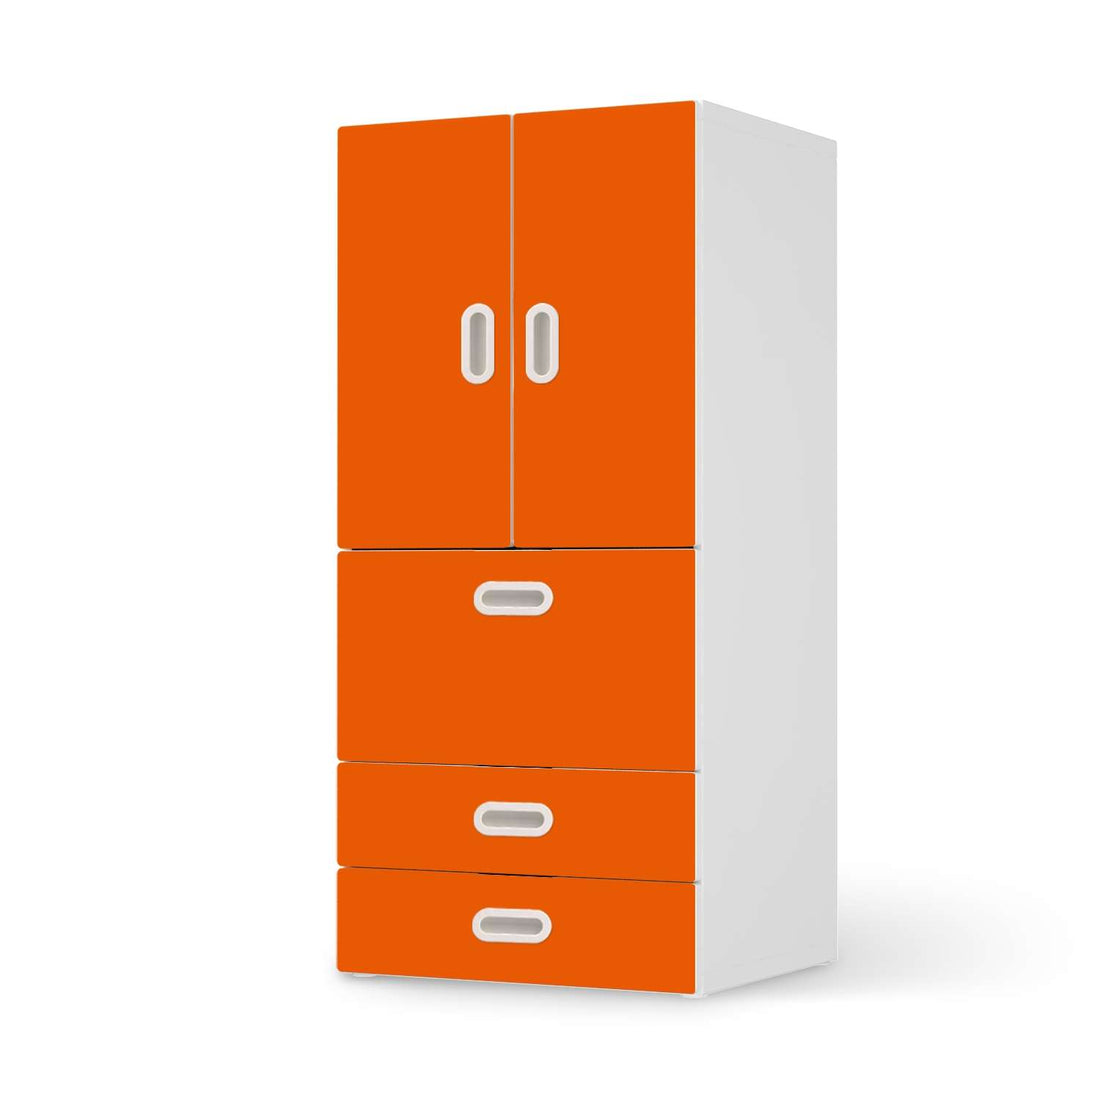 Möbelfolie Orange Dark - IKEA Stuva / Fritids kombiniert - 3 Schubladen und 2 kleine Türen  - weiss